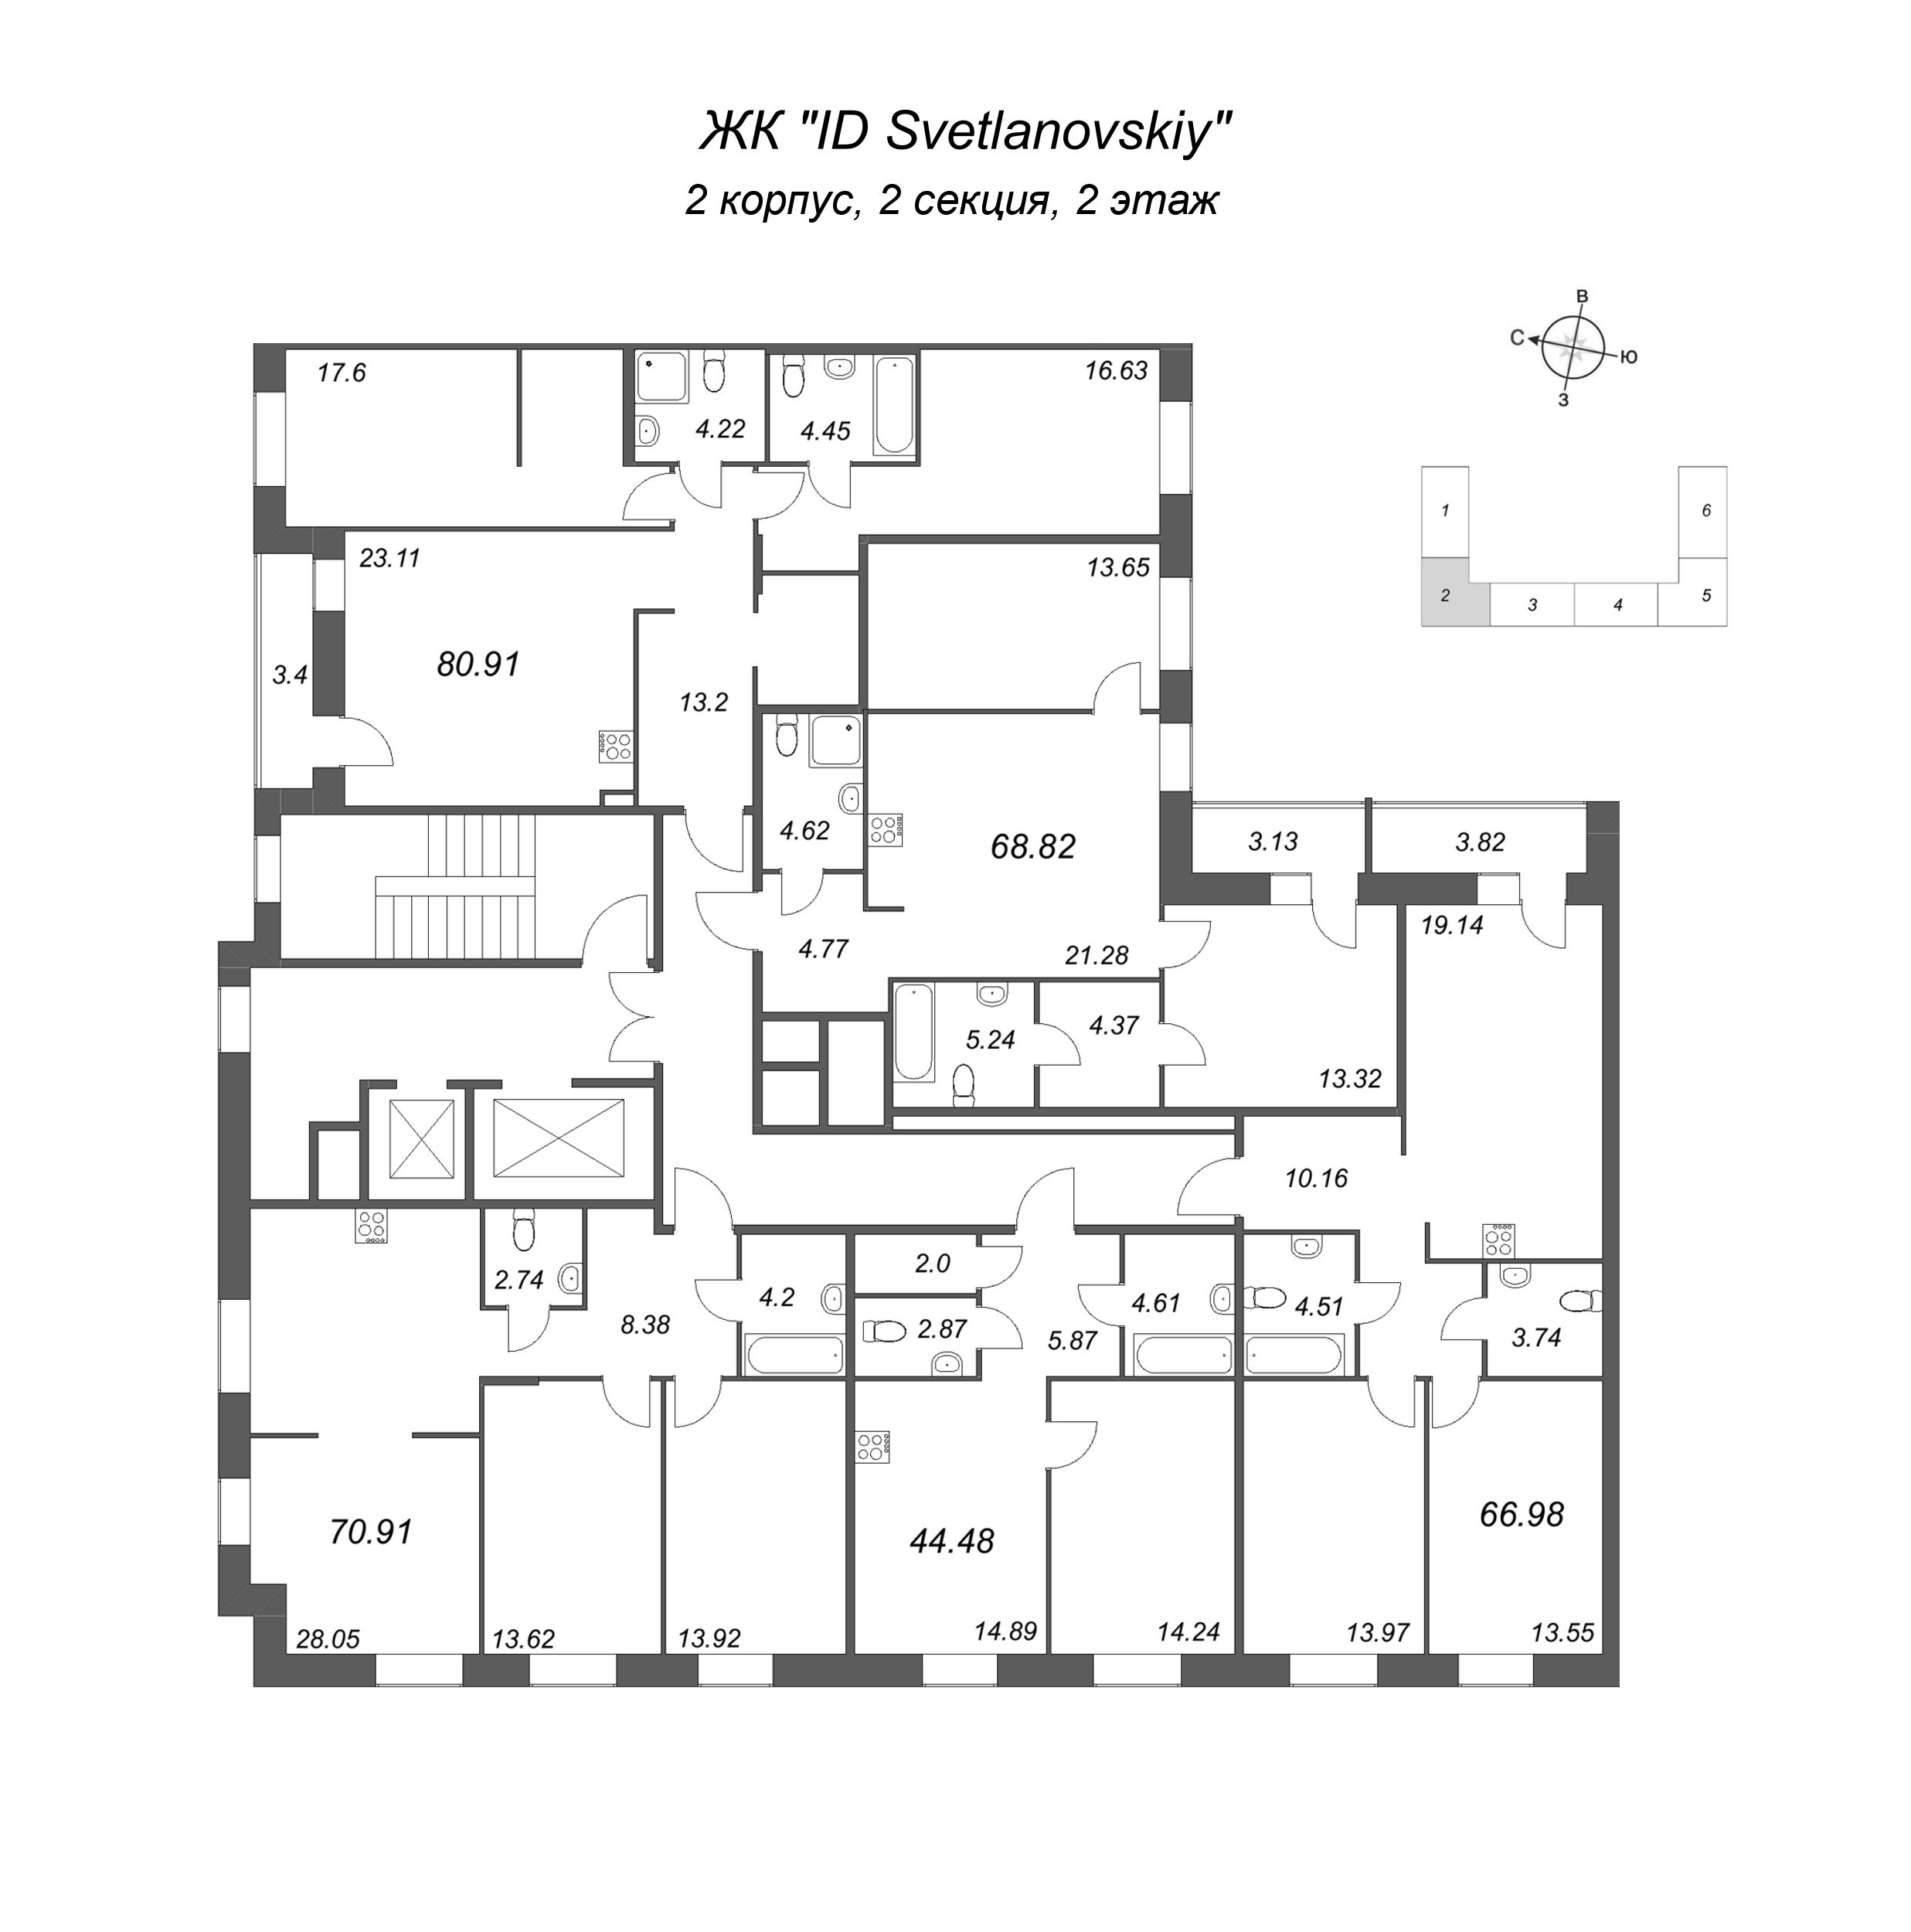 3-комнатная (Евро) квартира, 66.98 м² в ЖК "ID Svetlanovskiy" - планировка этажа